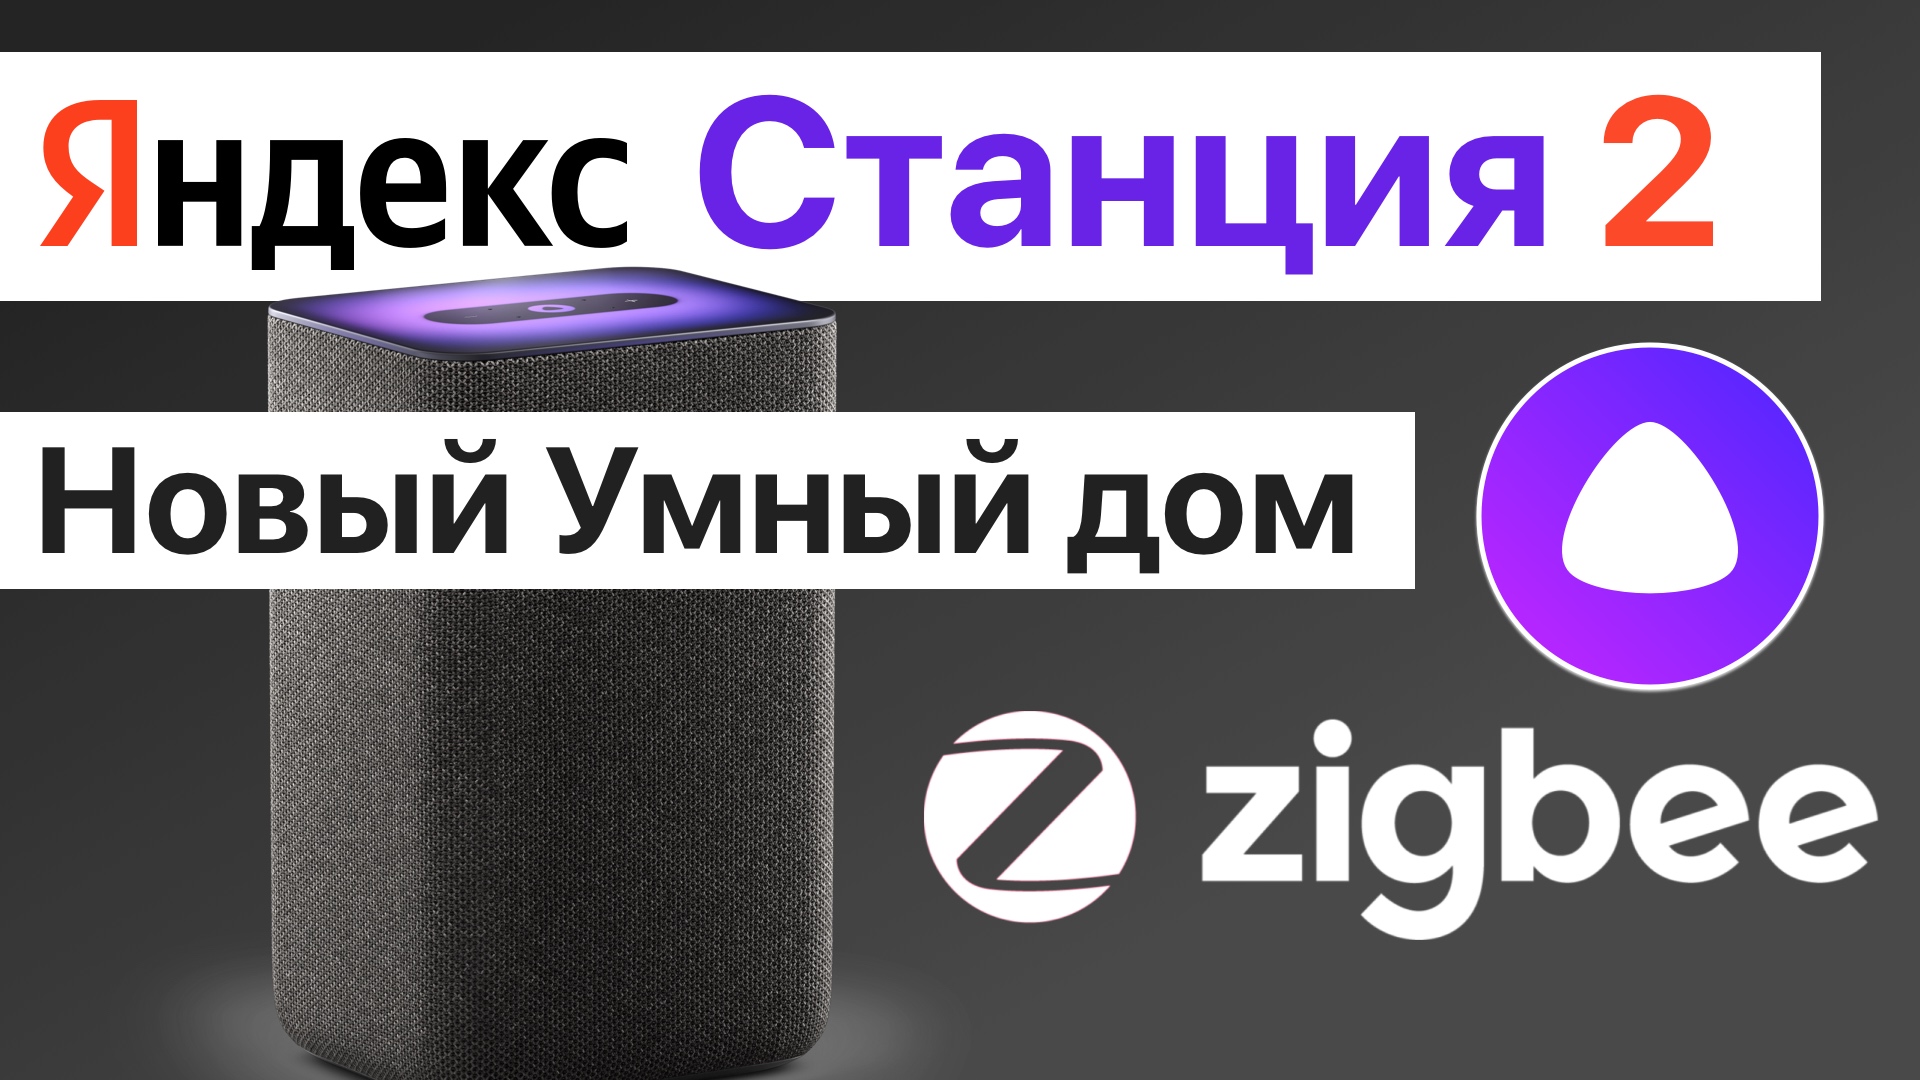 Яндекс Станция 2 поколения с Алисой и Zigbee лучшая колонка для умного дома в России?